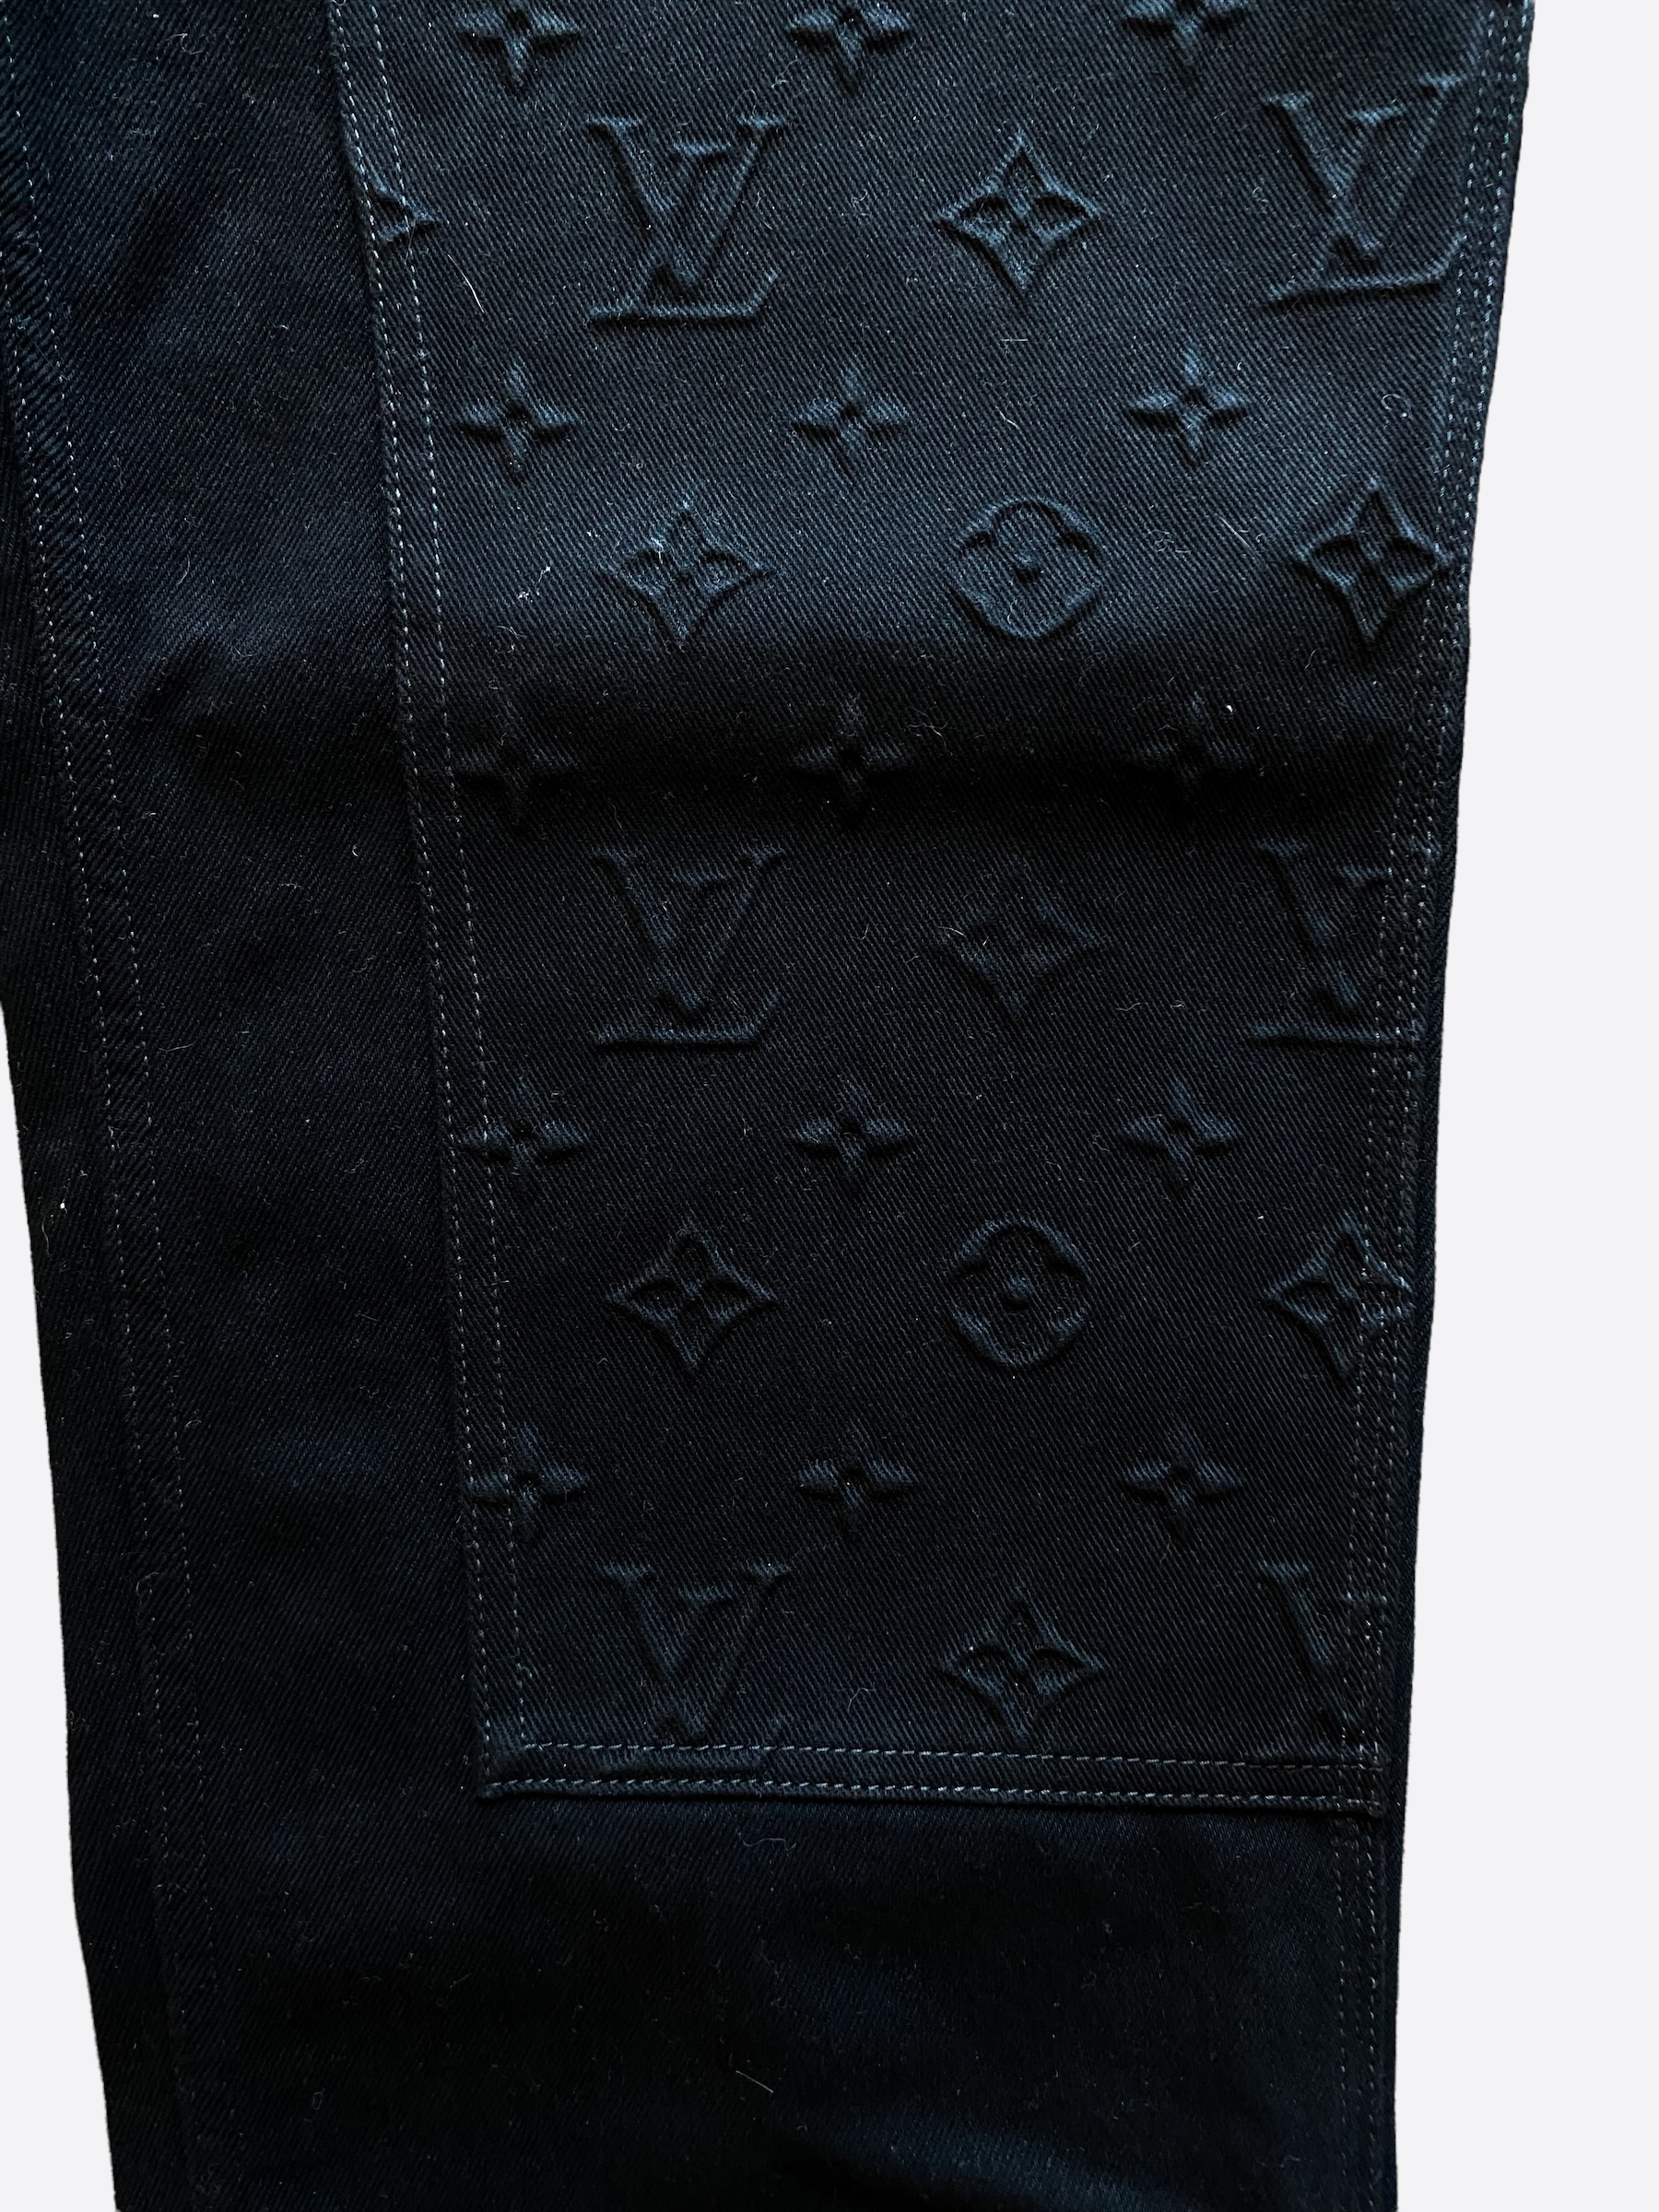 Louis Vuitton Monogram Workwear Denim Carpenter Pants Black